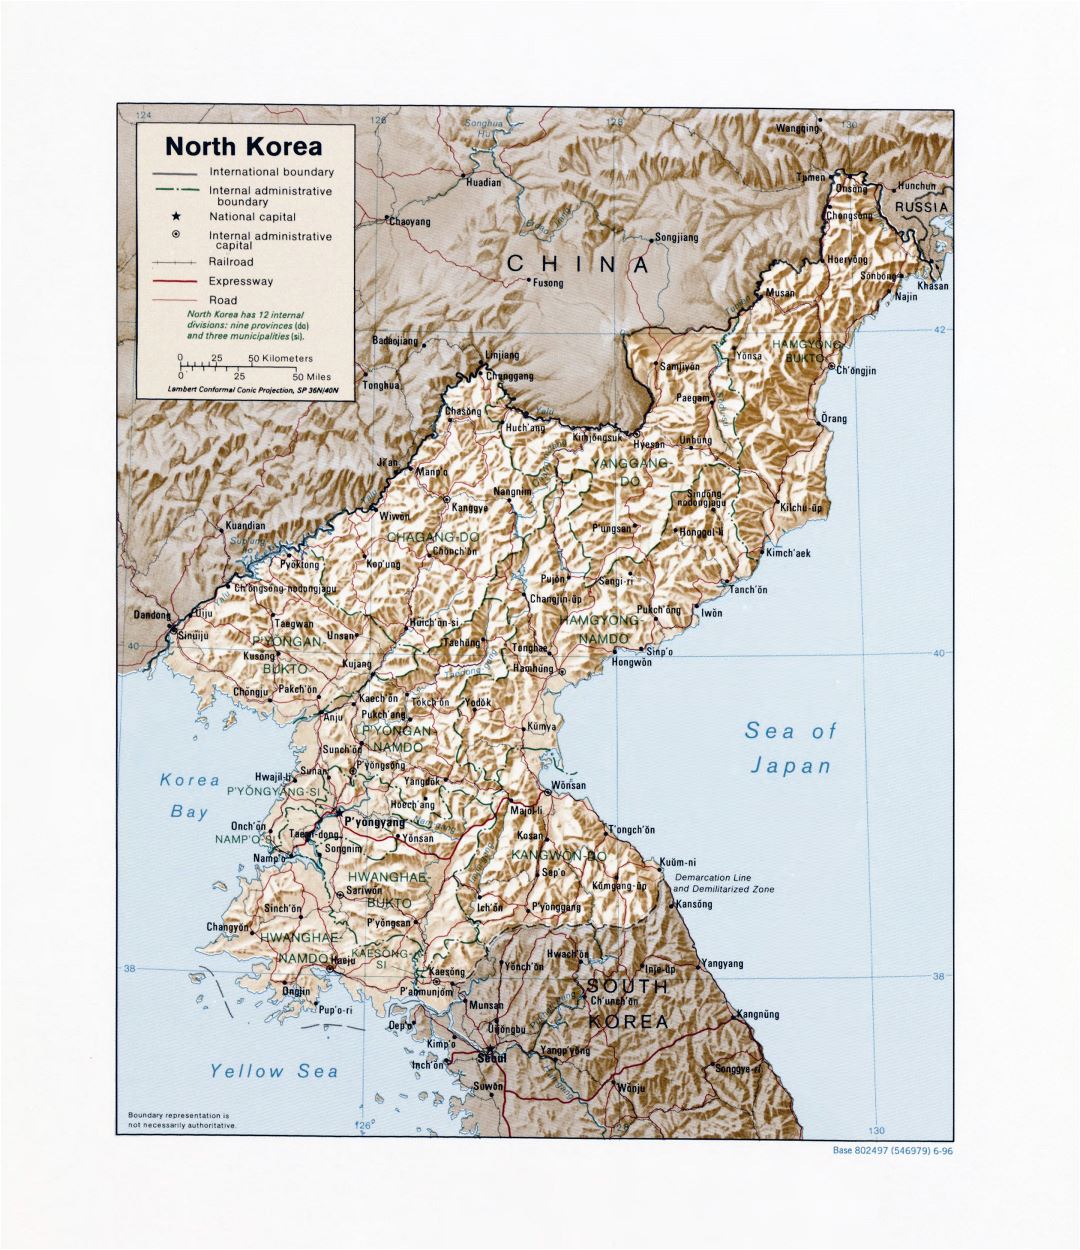 Grande detallado mapa político y administrativo de Corea del Norte con socorro, carreteras, ferrocarriles y principales ciudades - 1996